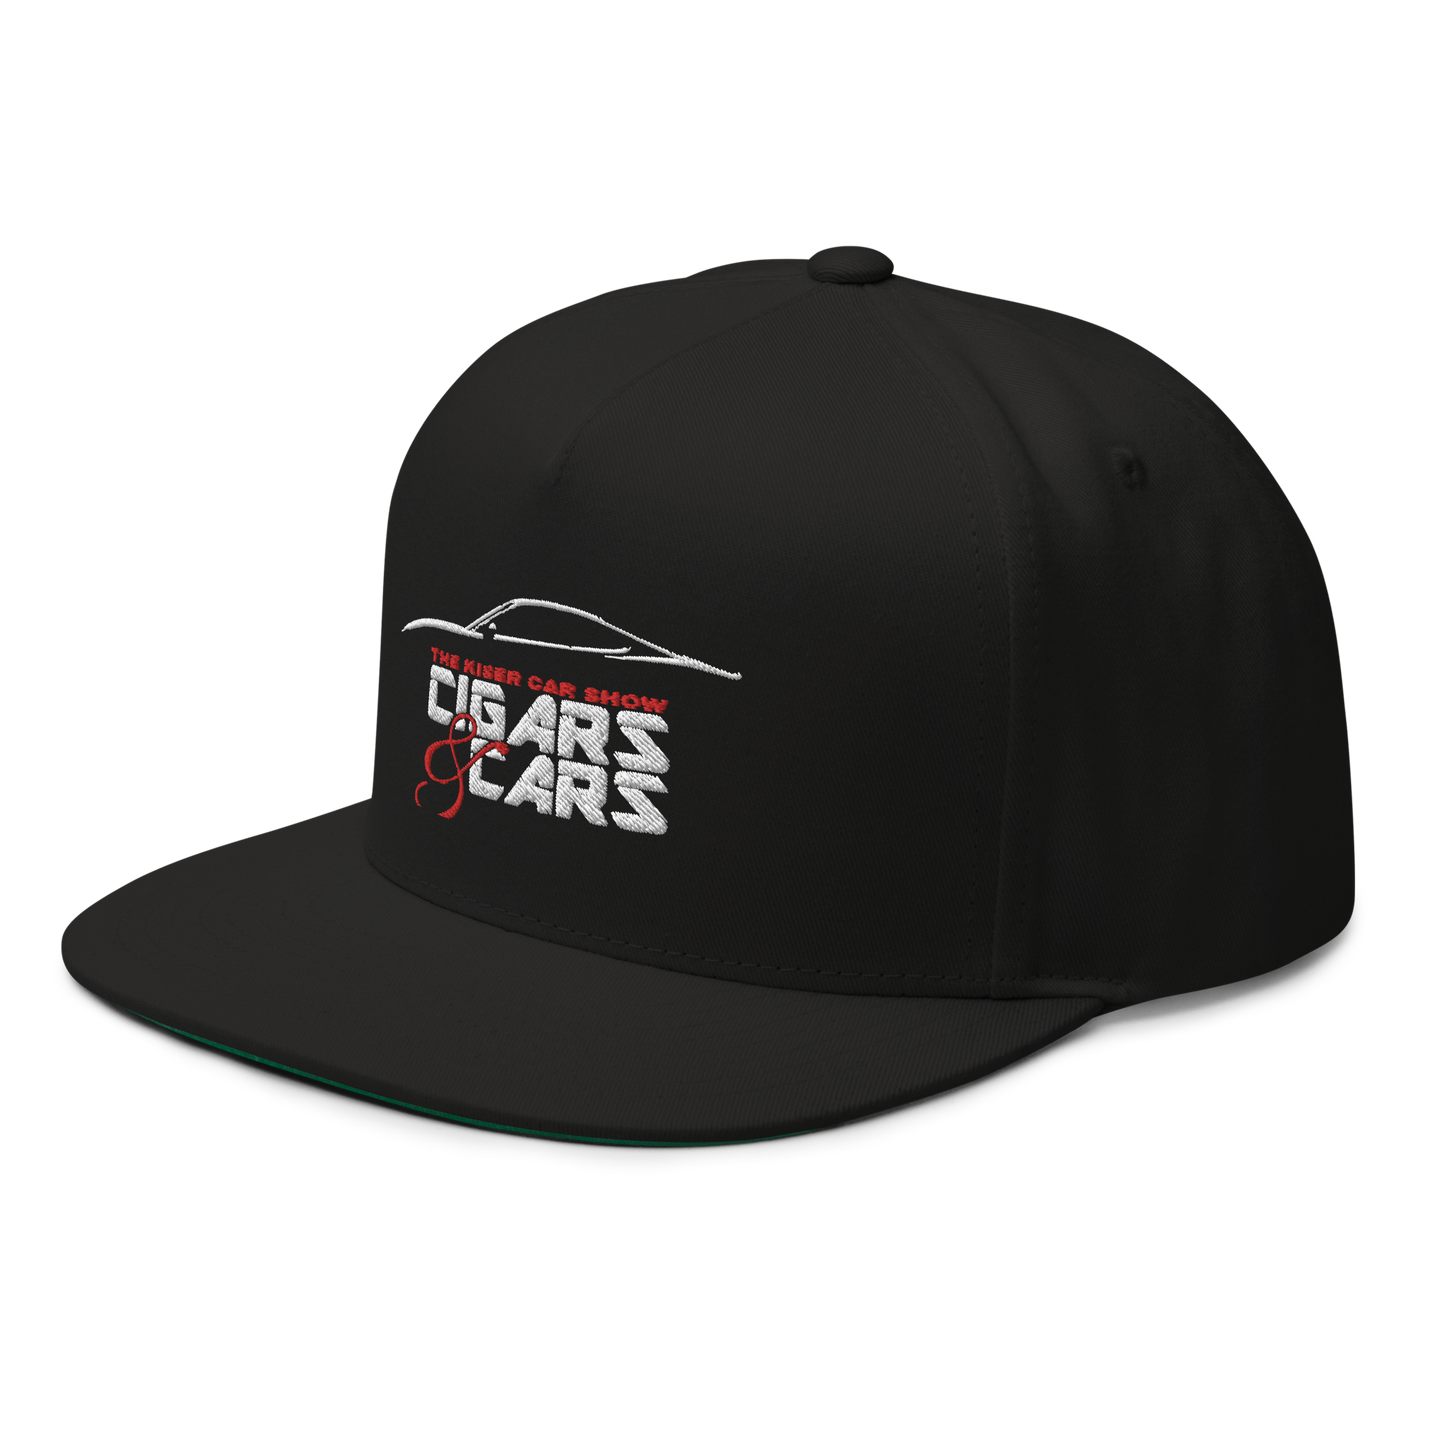 Black Baseball cap